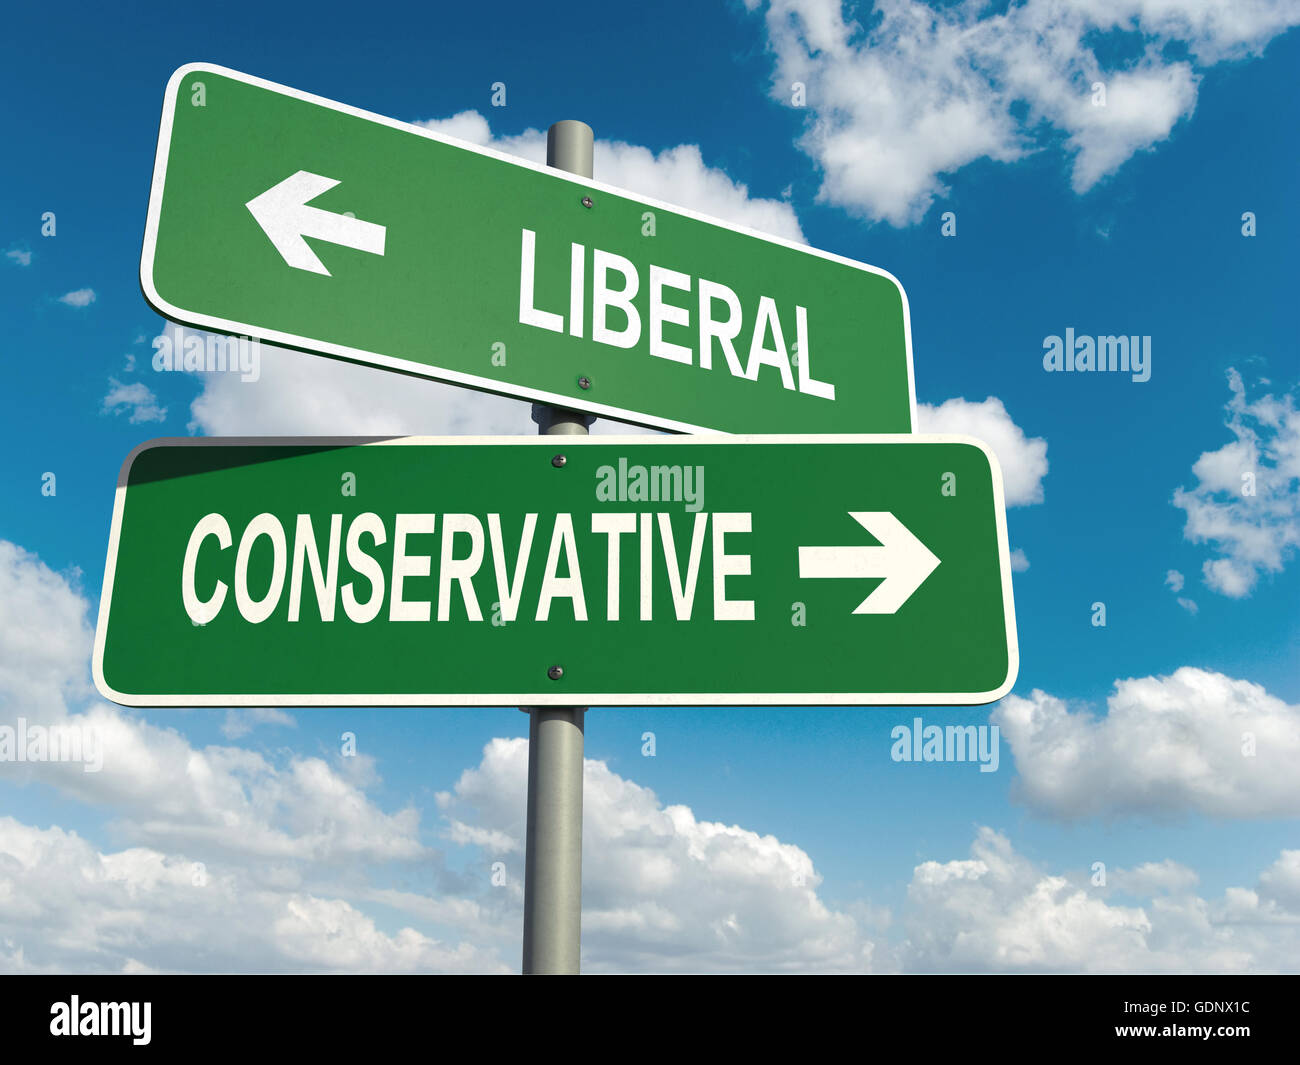 Ein Straßenschild mit liberalen konservativen Worten am Himmelshintergrund Stockfoto